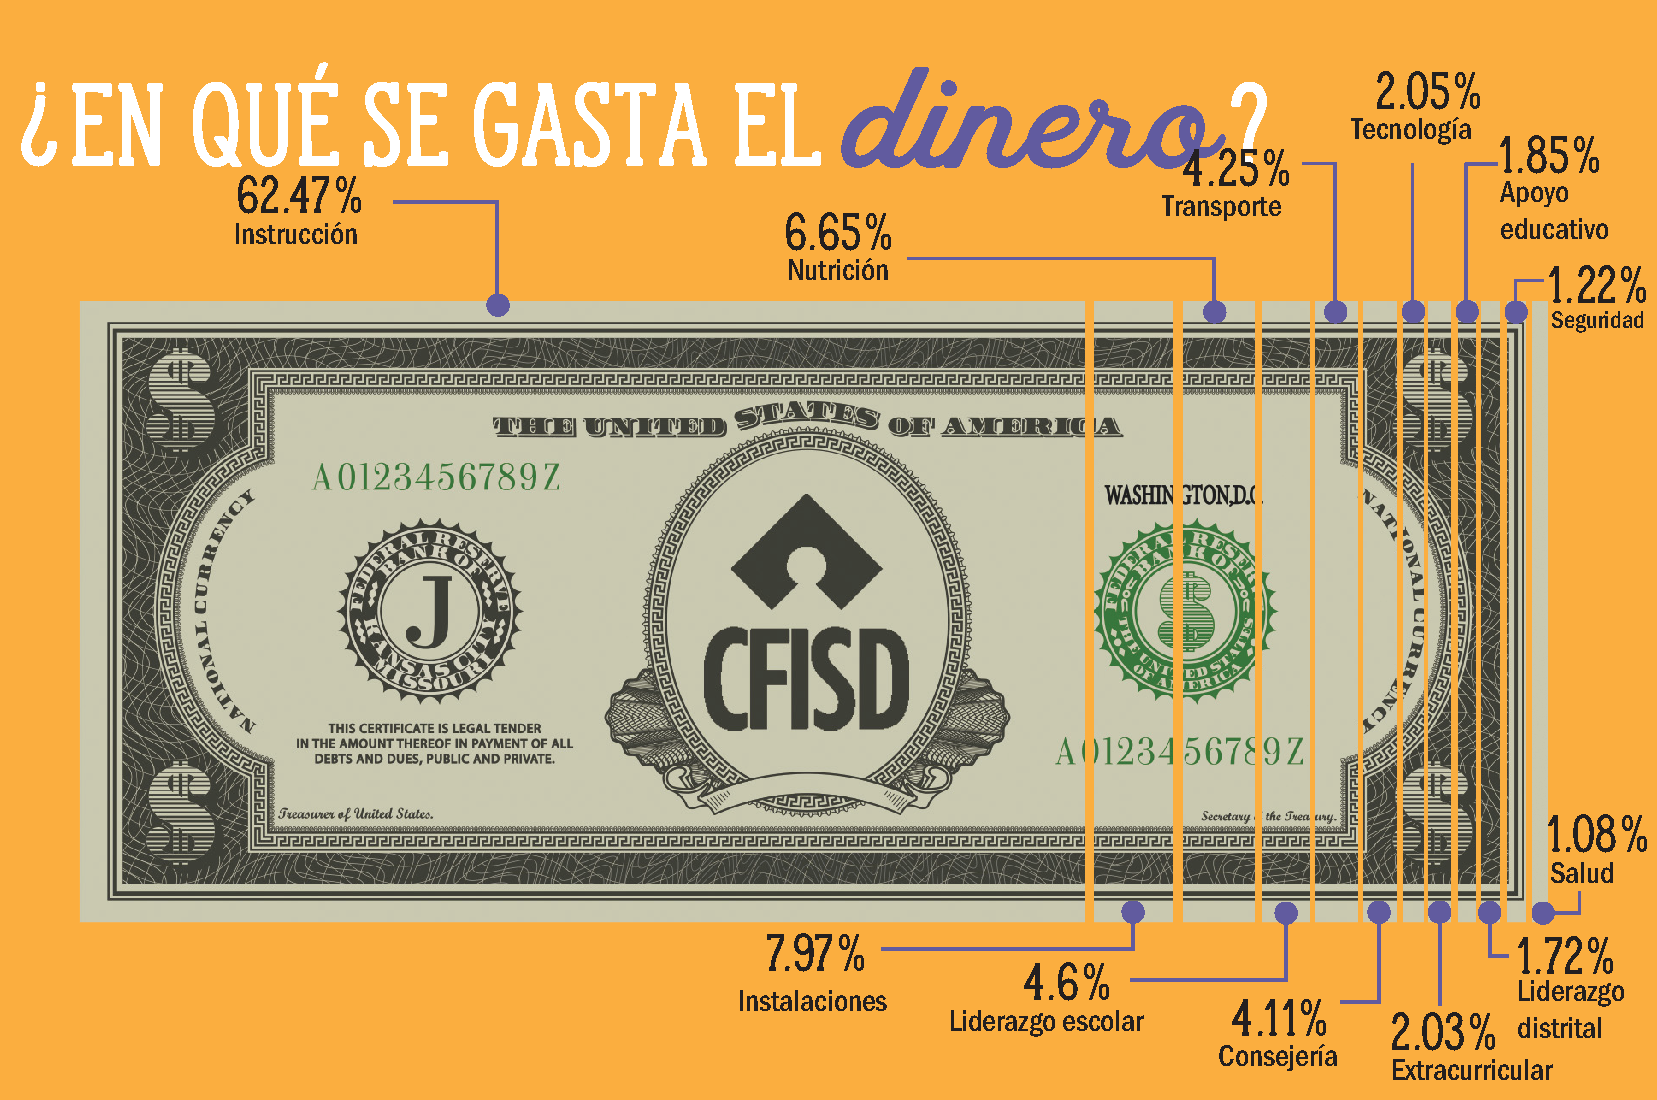 ¿En qué se gasta el dinero? 62.47% Instrucción, 7.97% Instalaciones, 6.65% Nutrición, 4.6% Liderazgo escolar, 4.25% Transporte